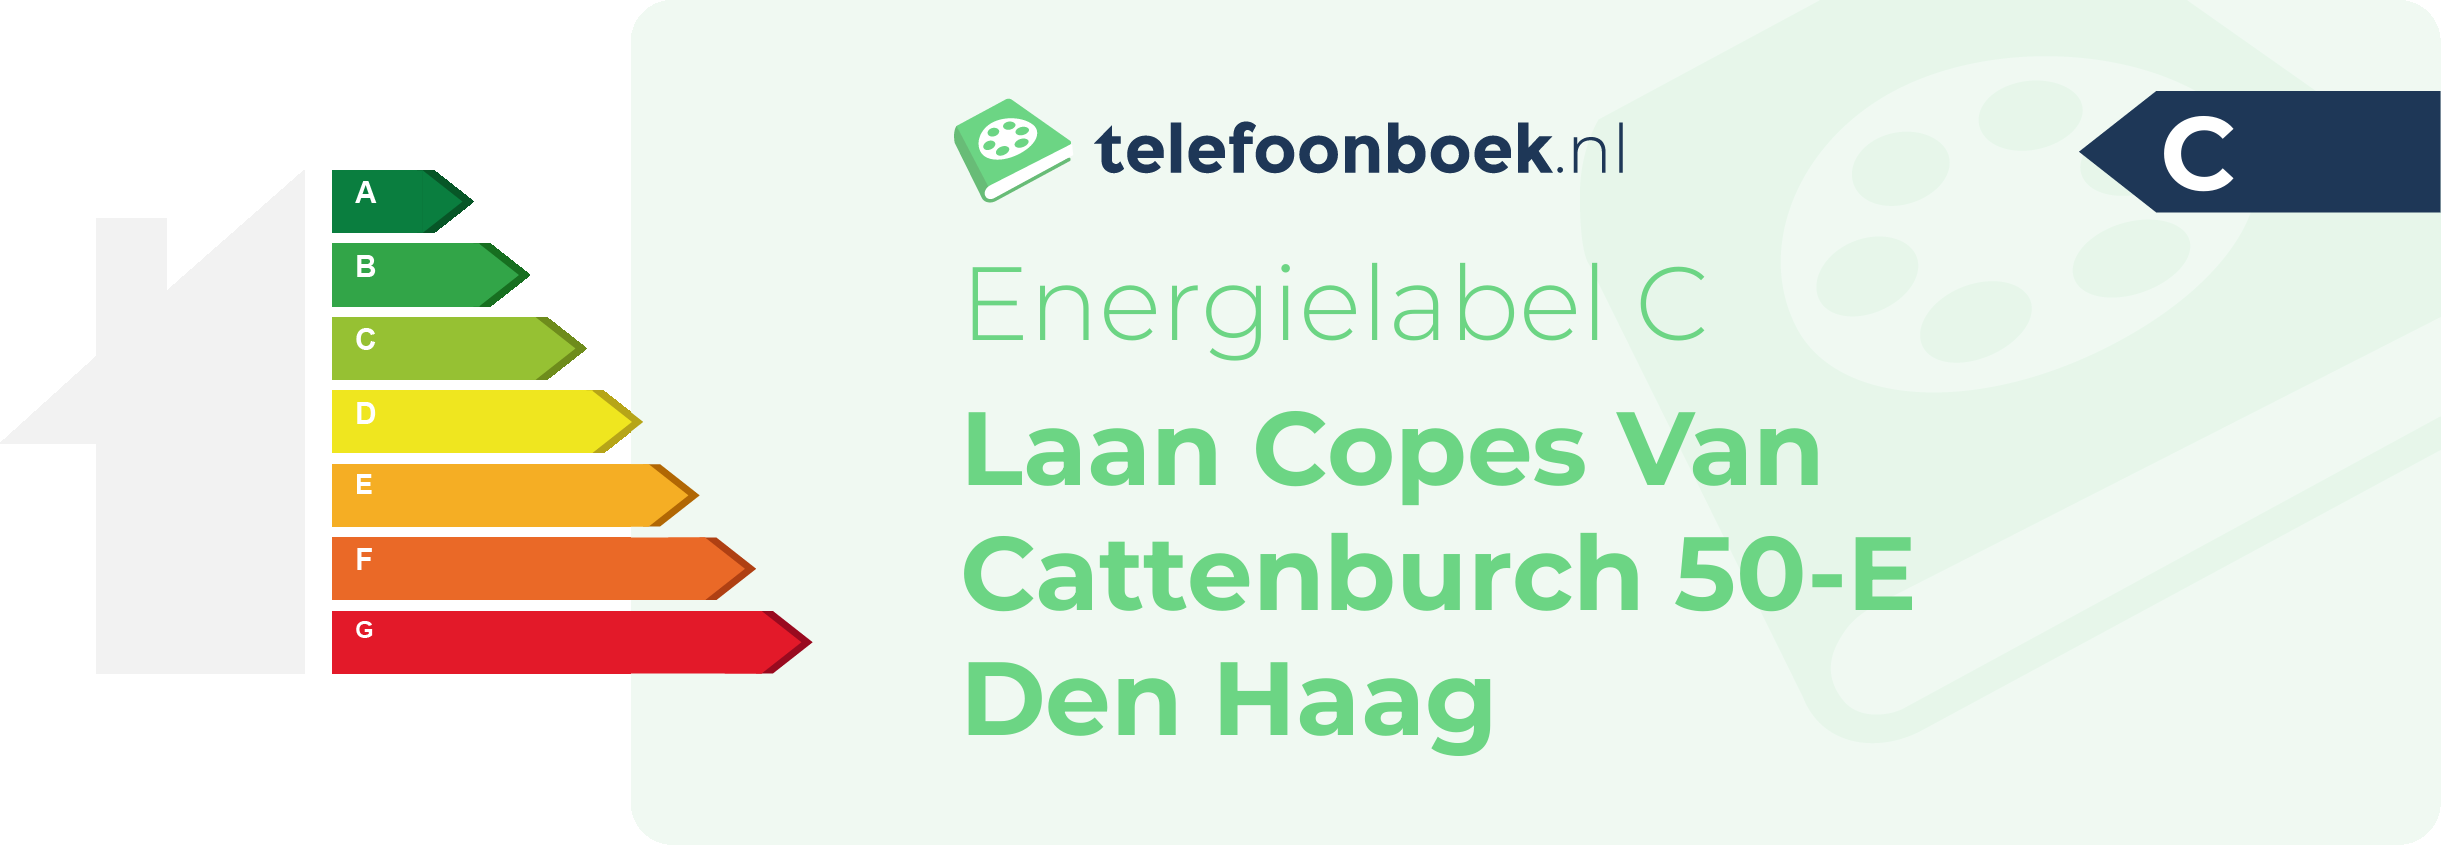 Energielabel Laan Copes Van Cattenburch 50-E Den Haag